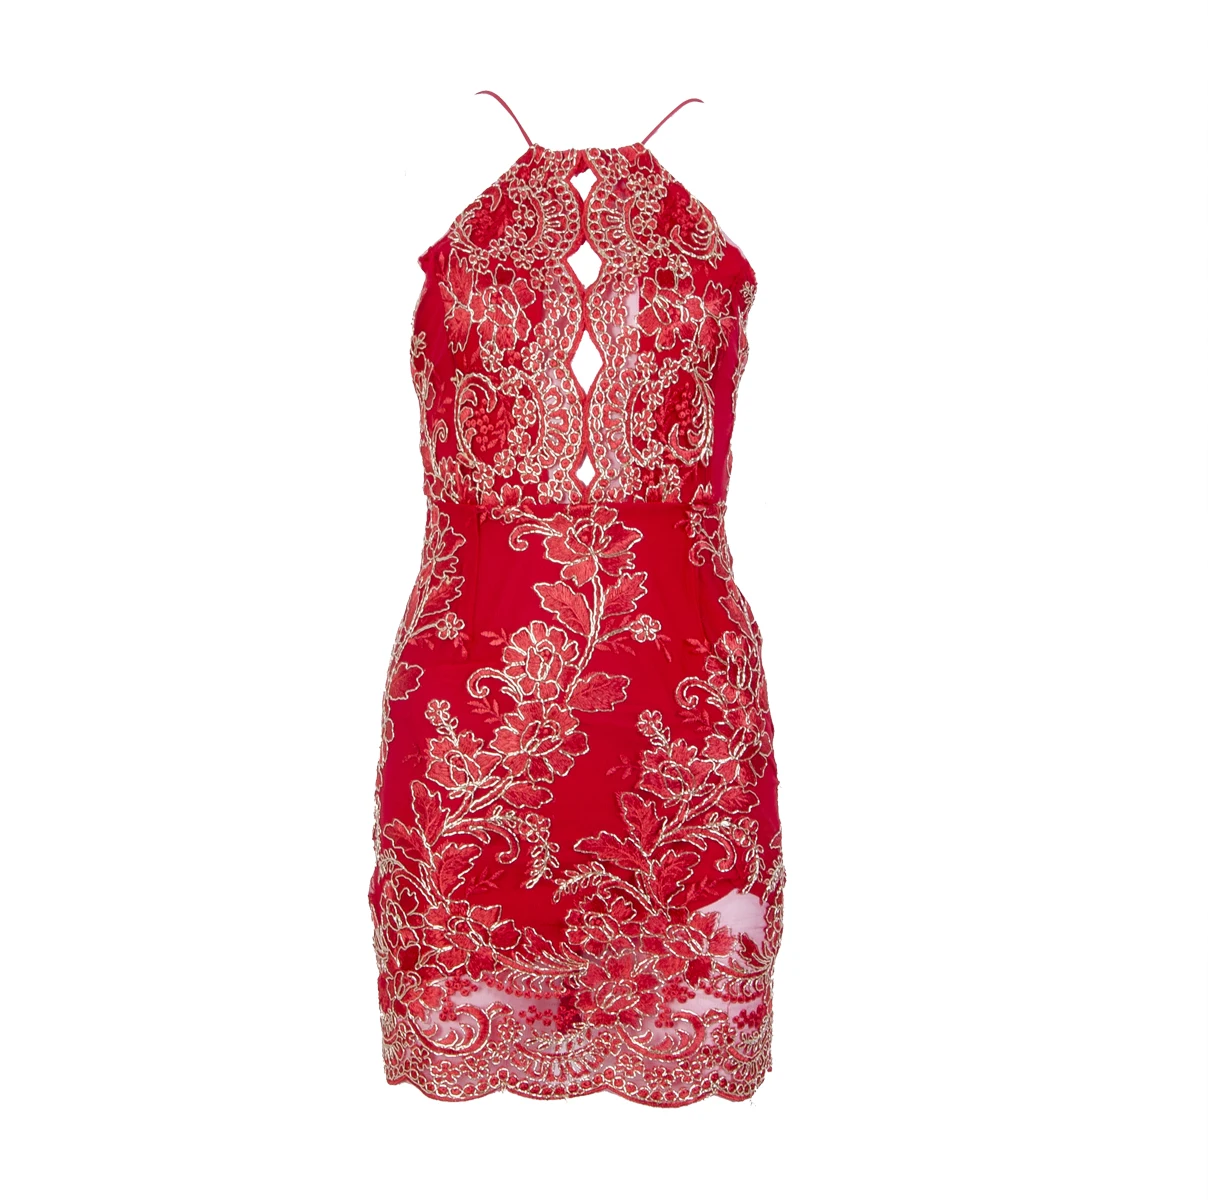 Для женщин летние платья Бандажное, обтягивающее, изящное длиной выше колена Вечеринка Клубные пайетки стильные китайские платья - Цвет: Красный